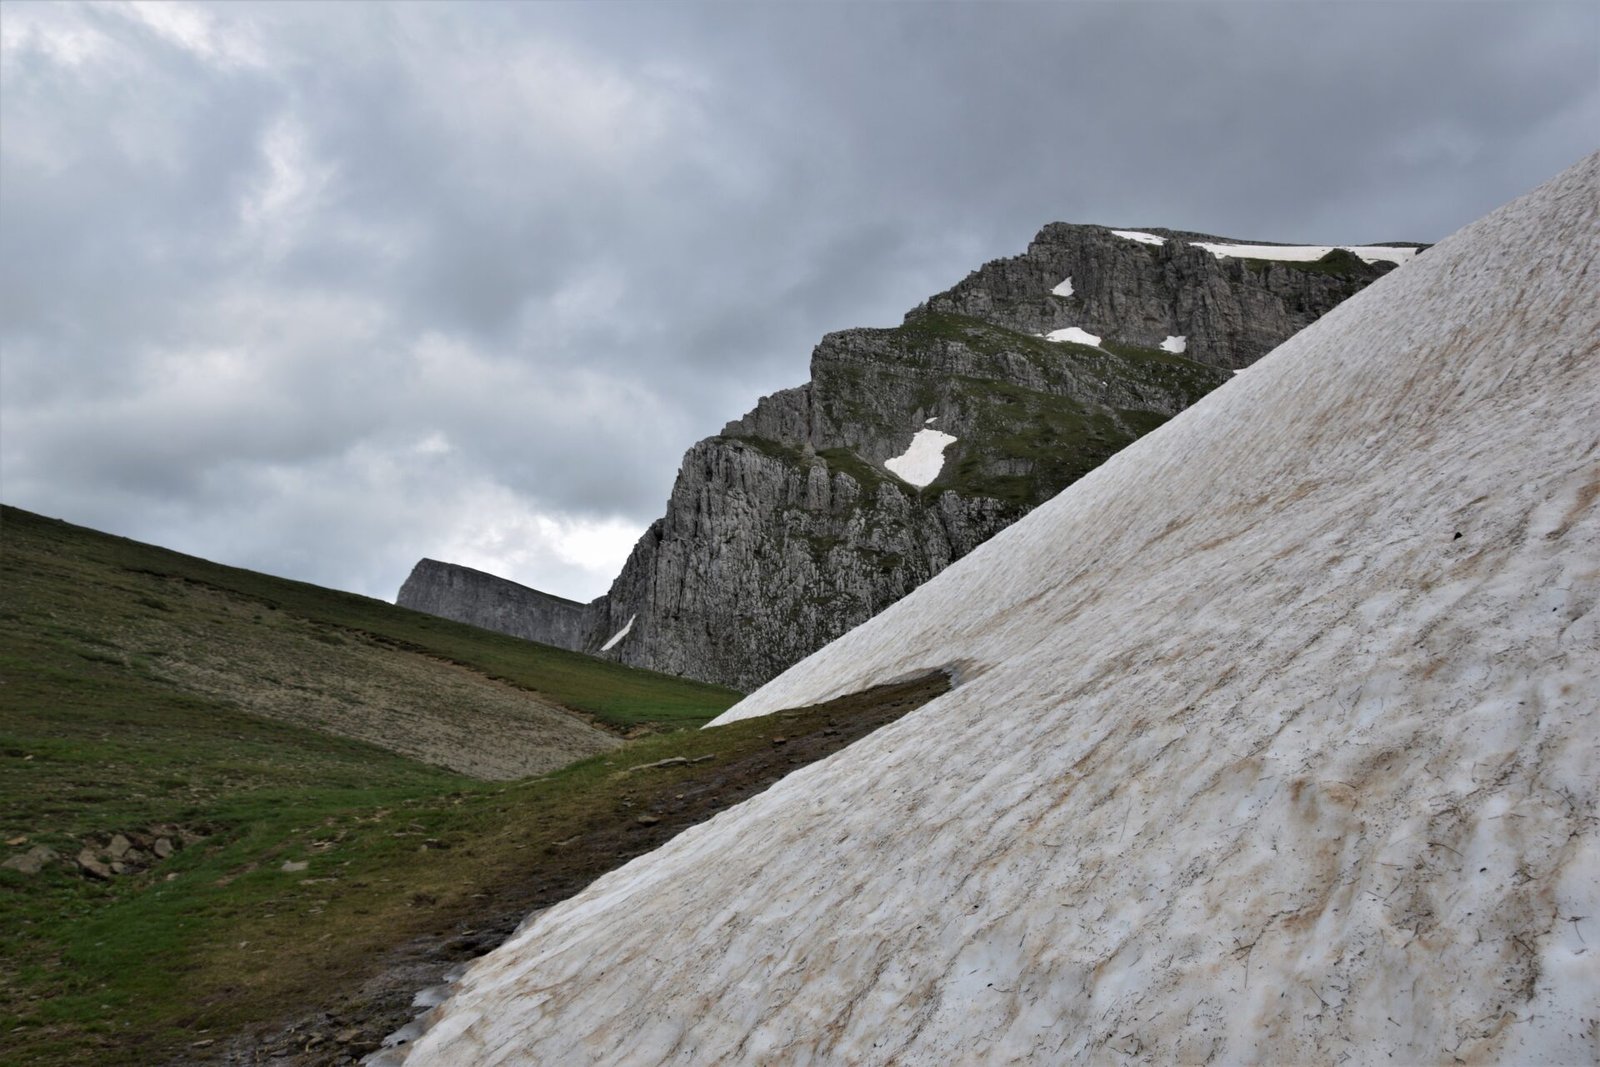 imposing peaks loom behind a green alpine meadow half covered in snow